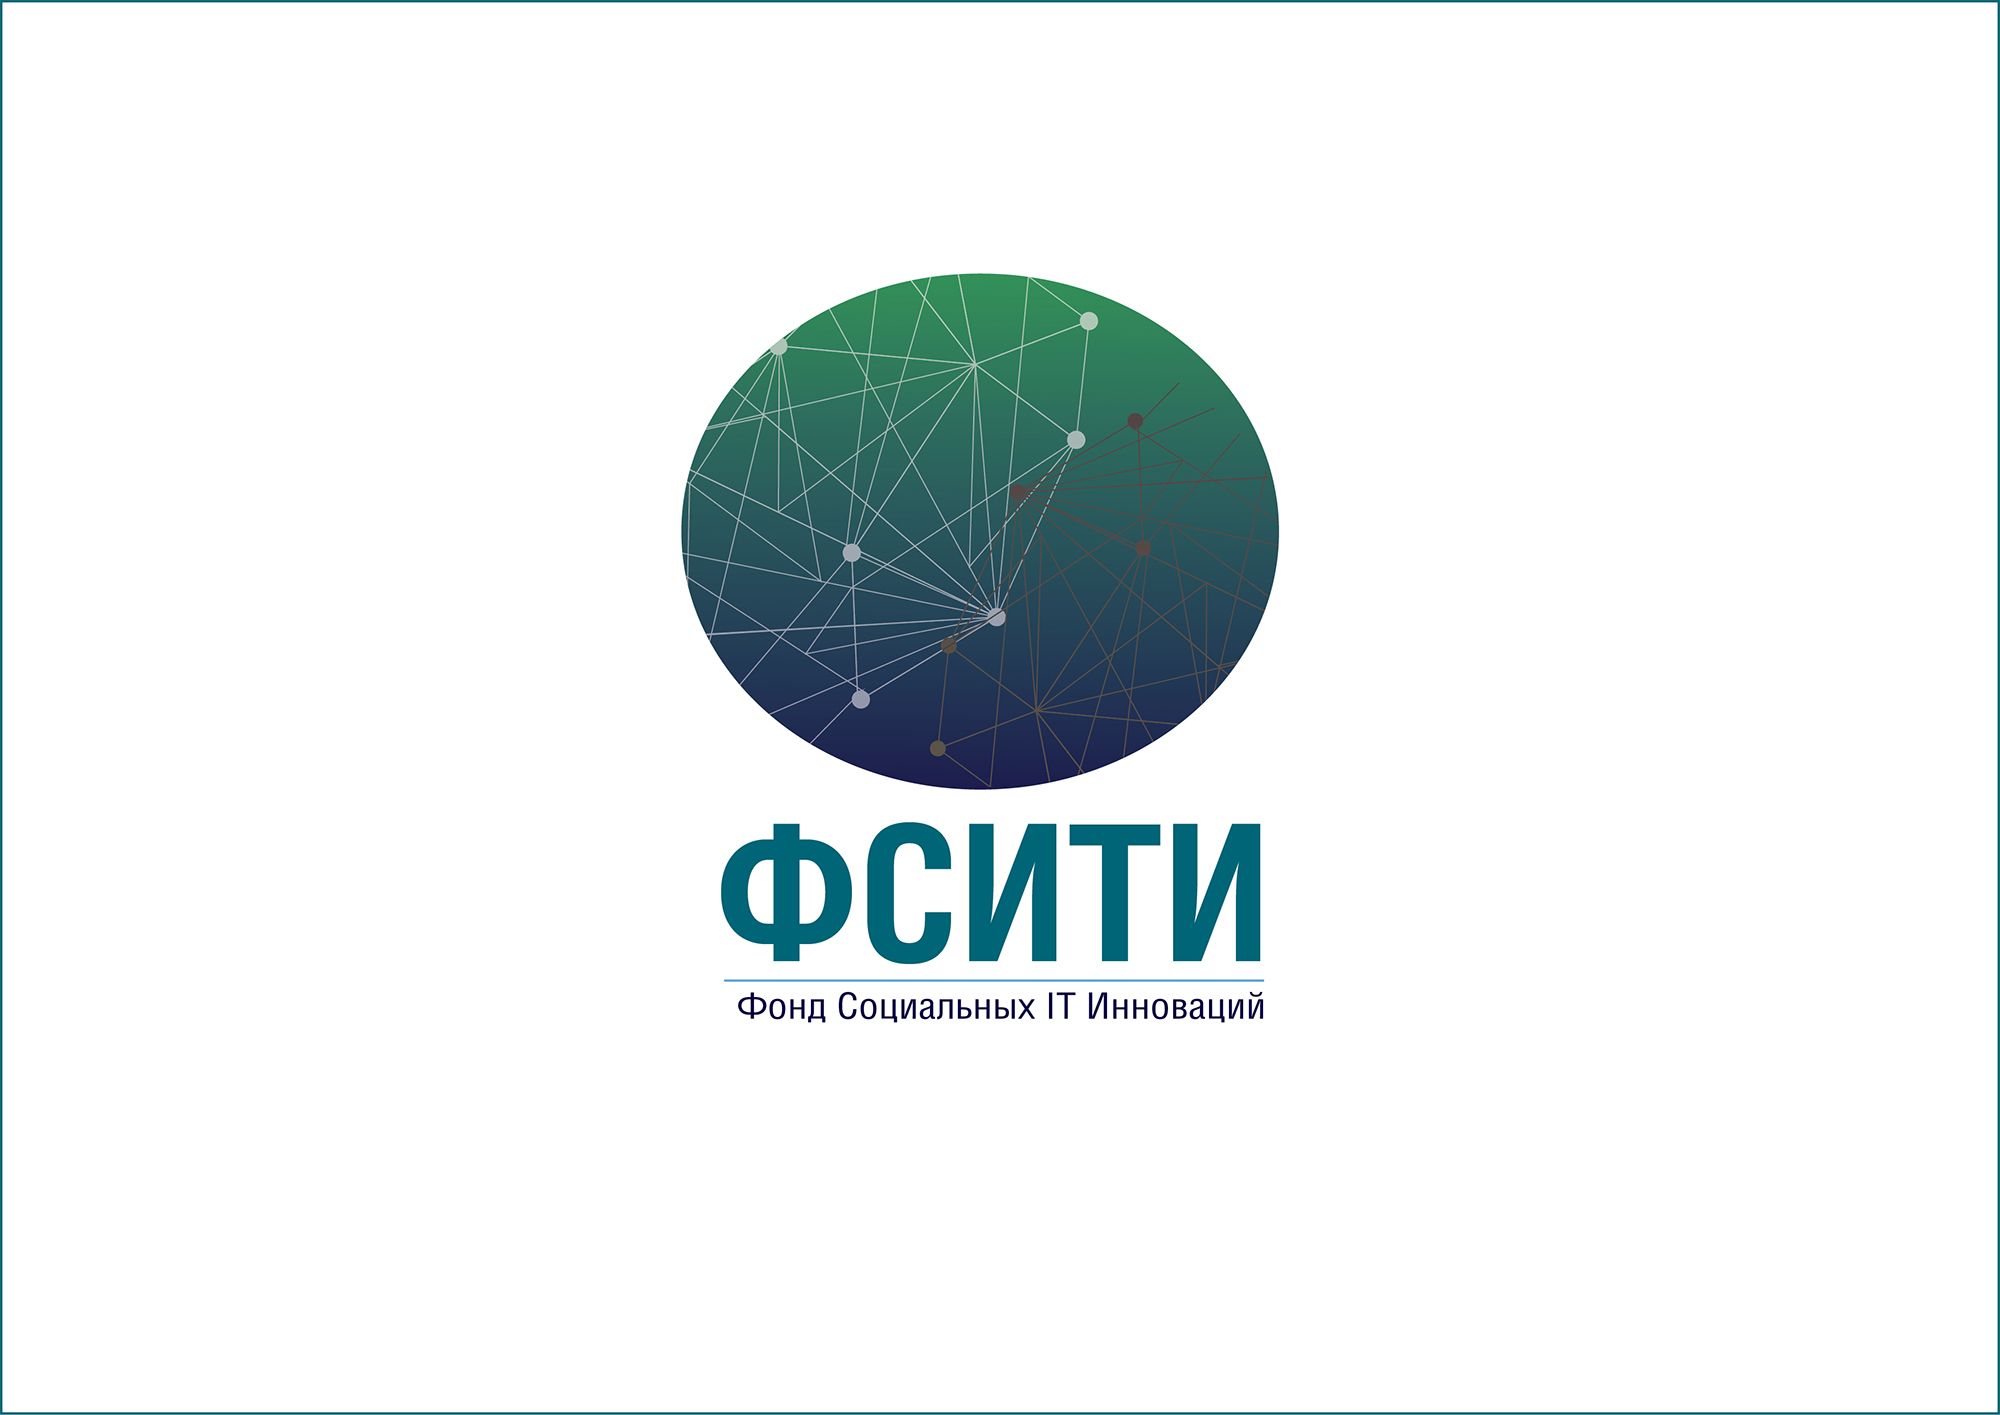 Логотип для ФСИТИ - Фонд Социальных IT Инноваций  - дизайнер CHdesign